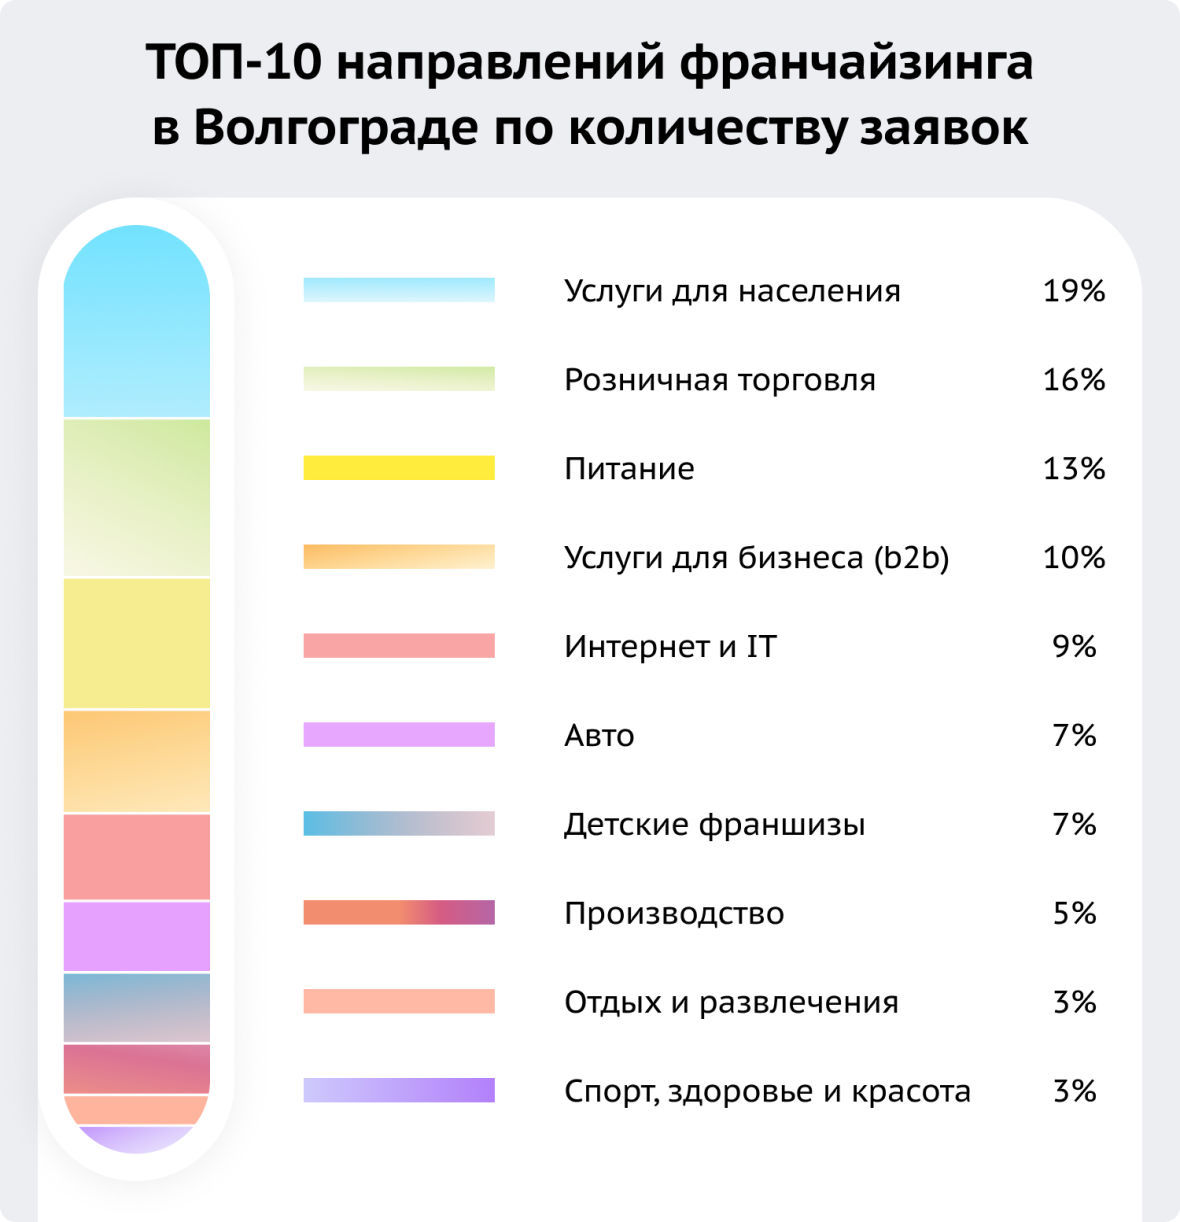 ТОП-10 направлений франчайзинга в Волгограде